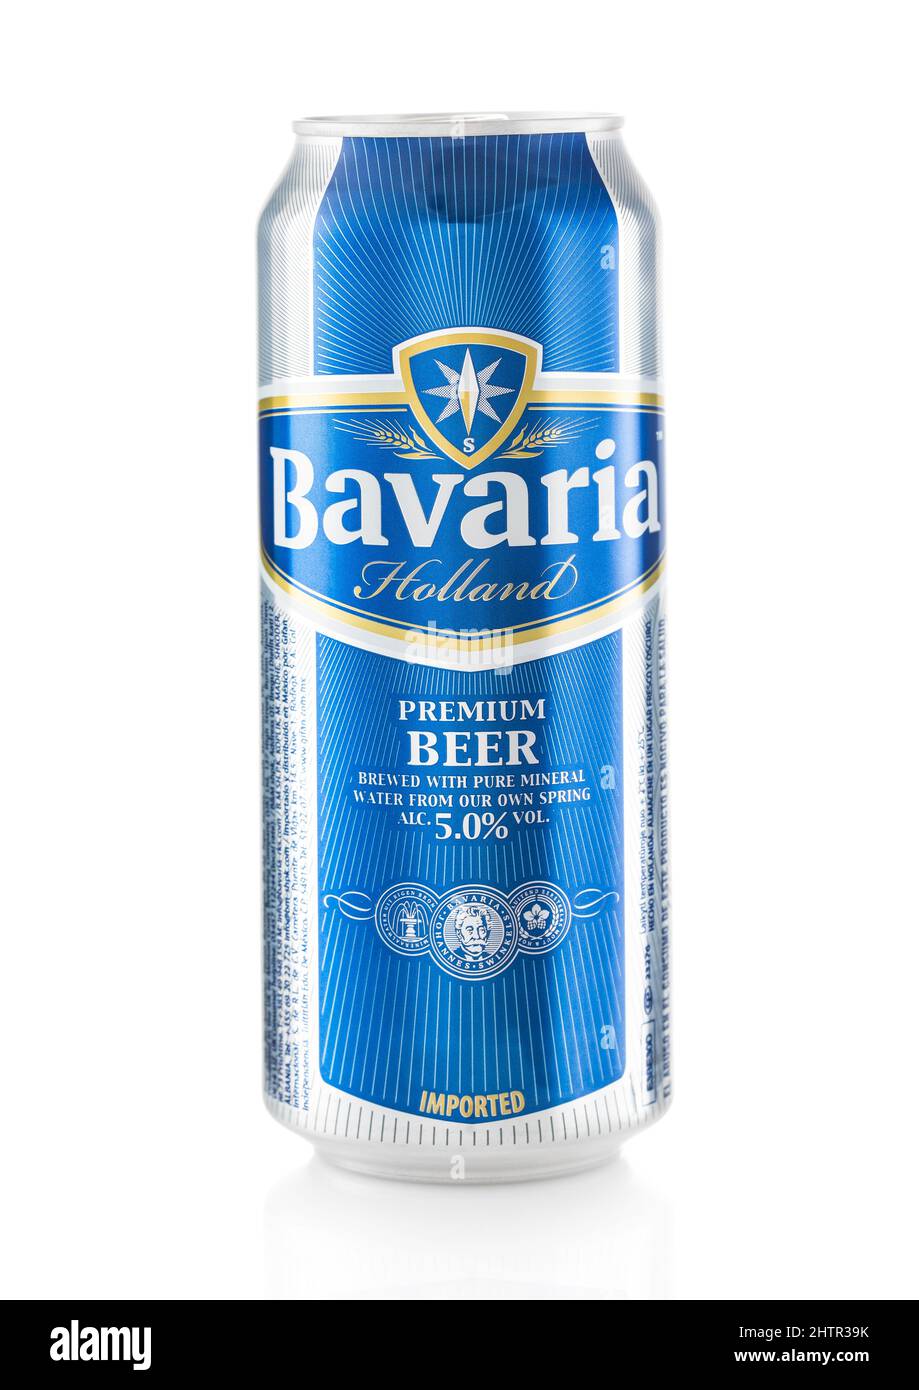 LONDON, UK - FEBRUAR 10,2022: Bavaria Premium Bier aus holland auf weißem  Hintergrund Stockfotografie - Alamy